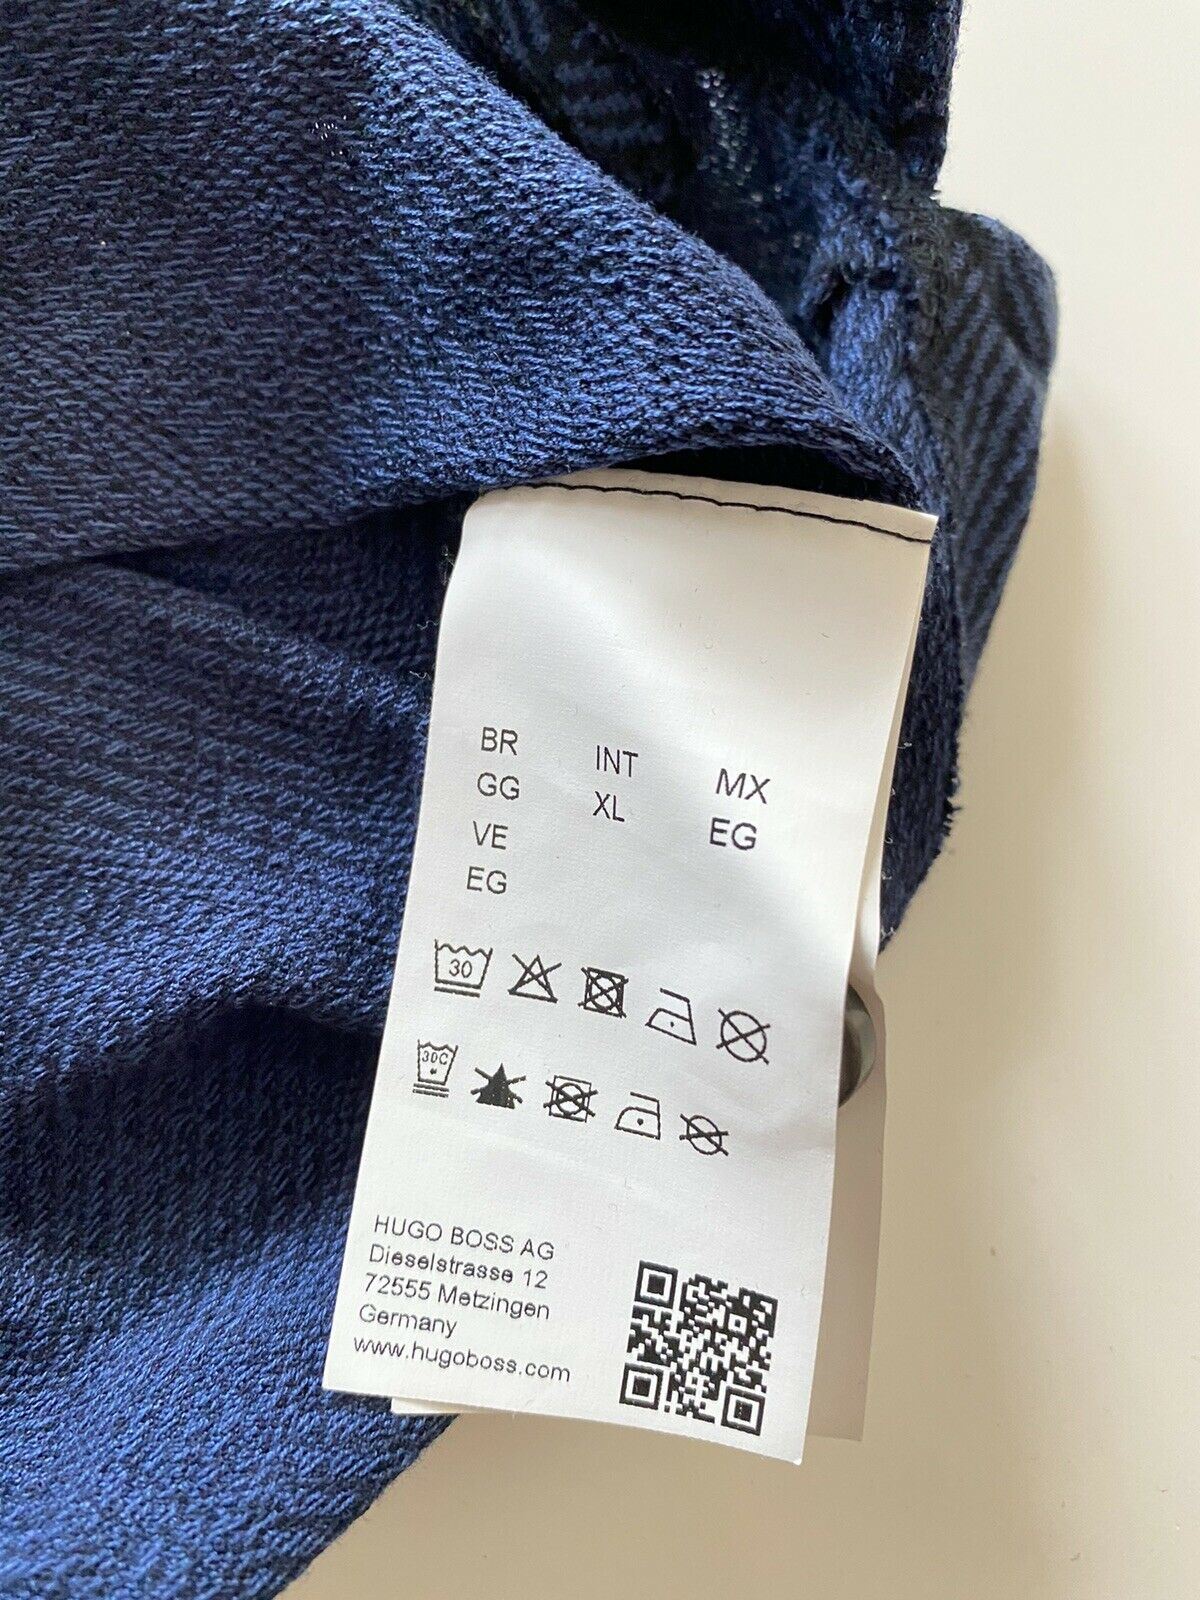 BOSS Hugo Boss Приталенная рубашка-поло приталенного кроя XL (подходит для ML), синяя 